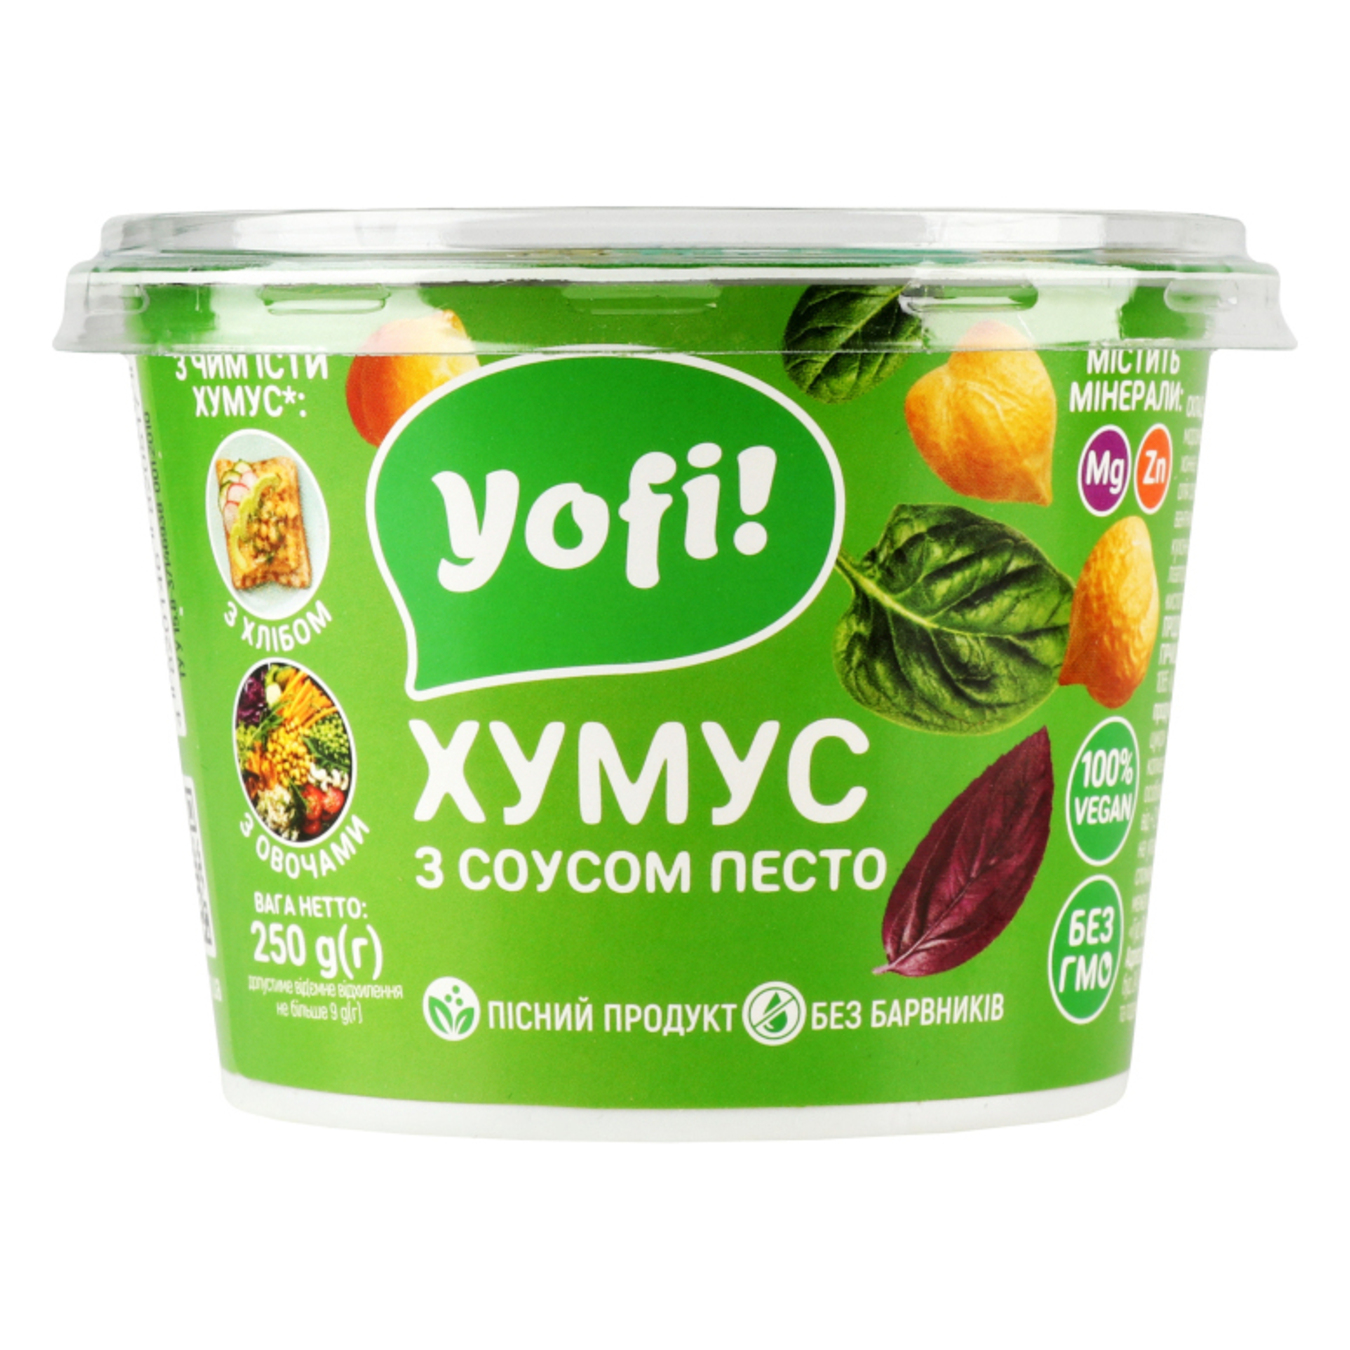 Хумус Yofi с соусом песто 250г